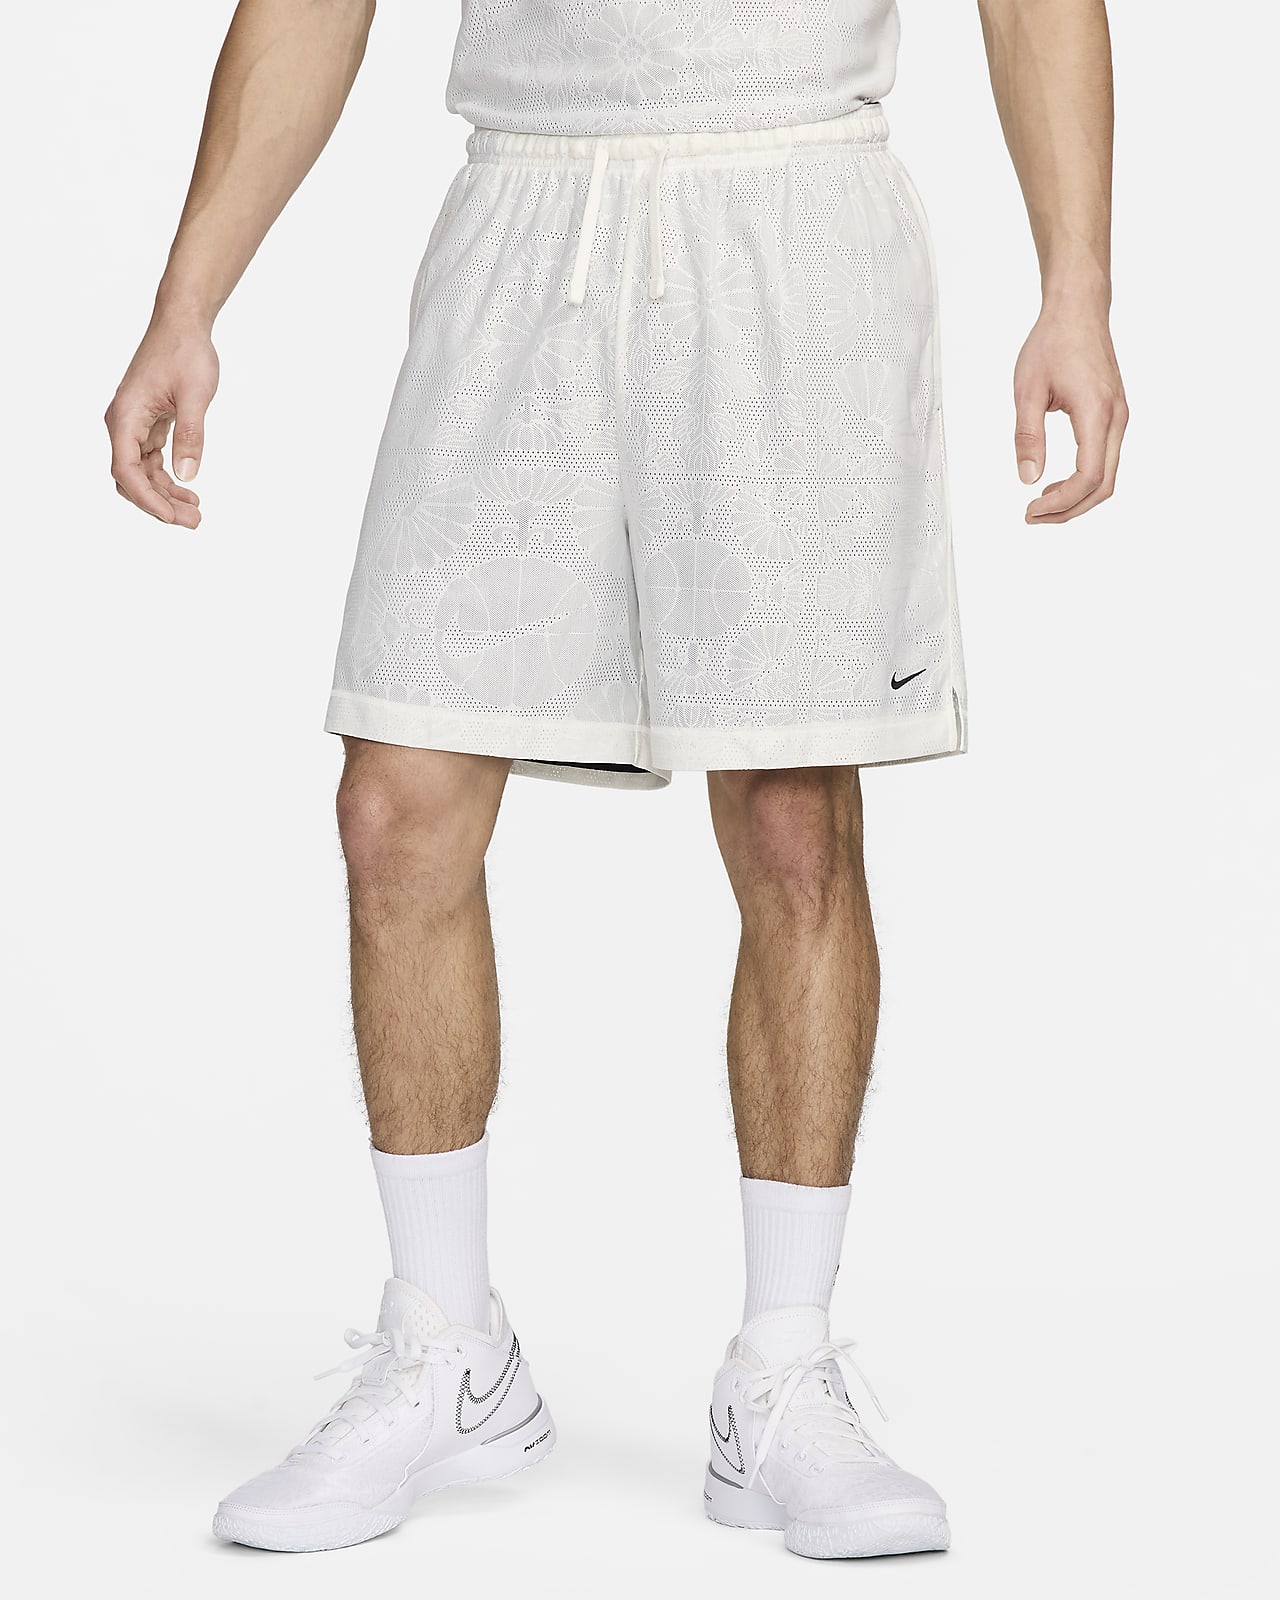 Calções de basquetebol reversíveis de 15 cm Dri-FIT Nike Standard Issue para homem